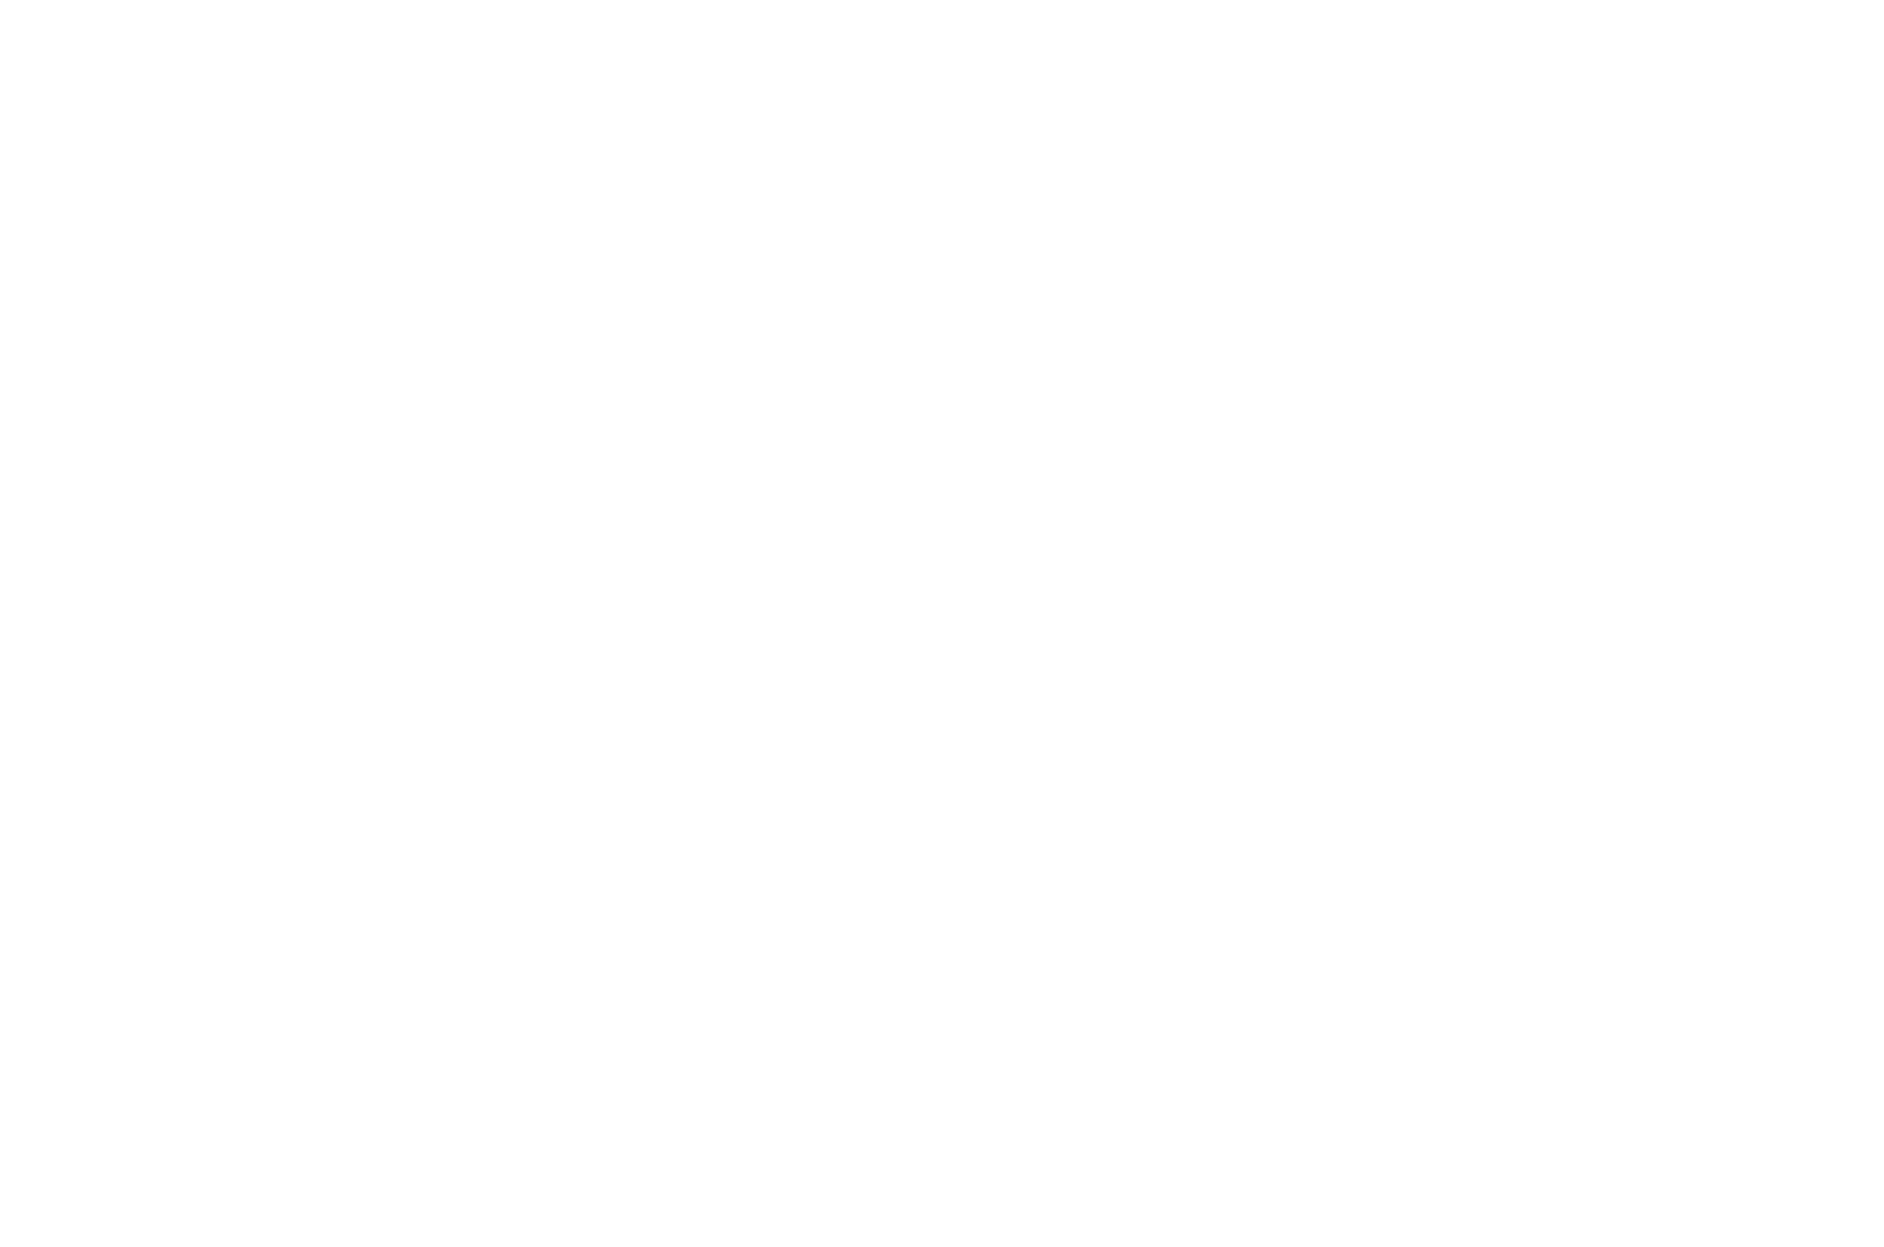 Gus' Coffee